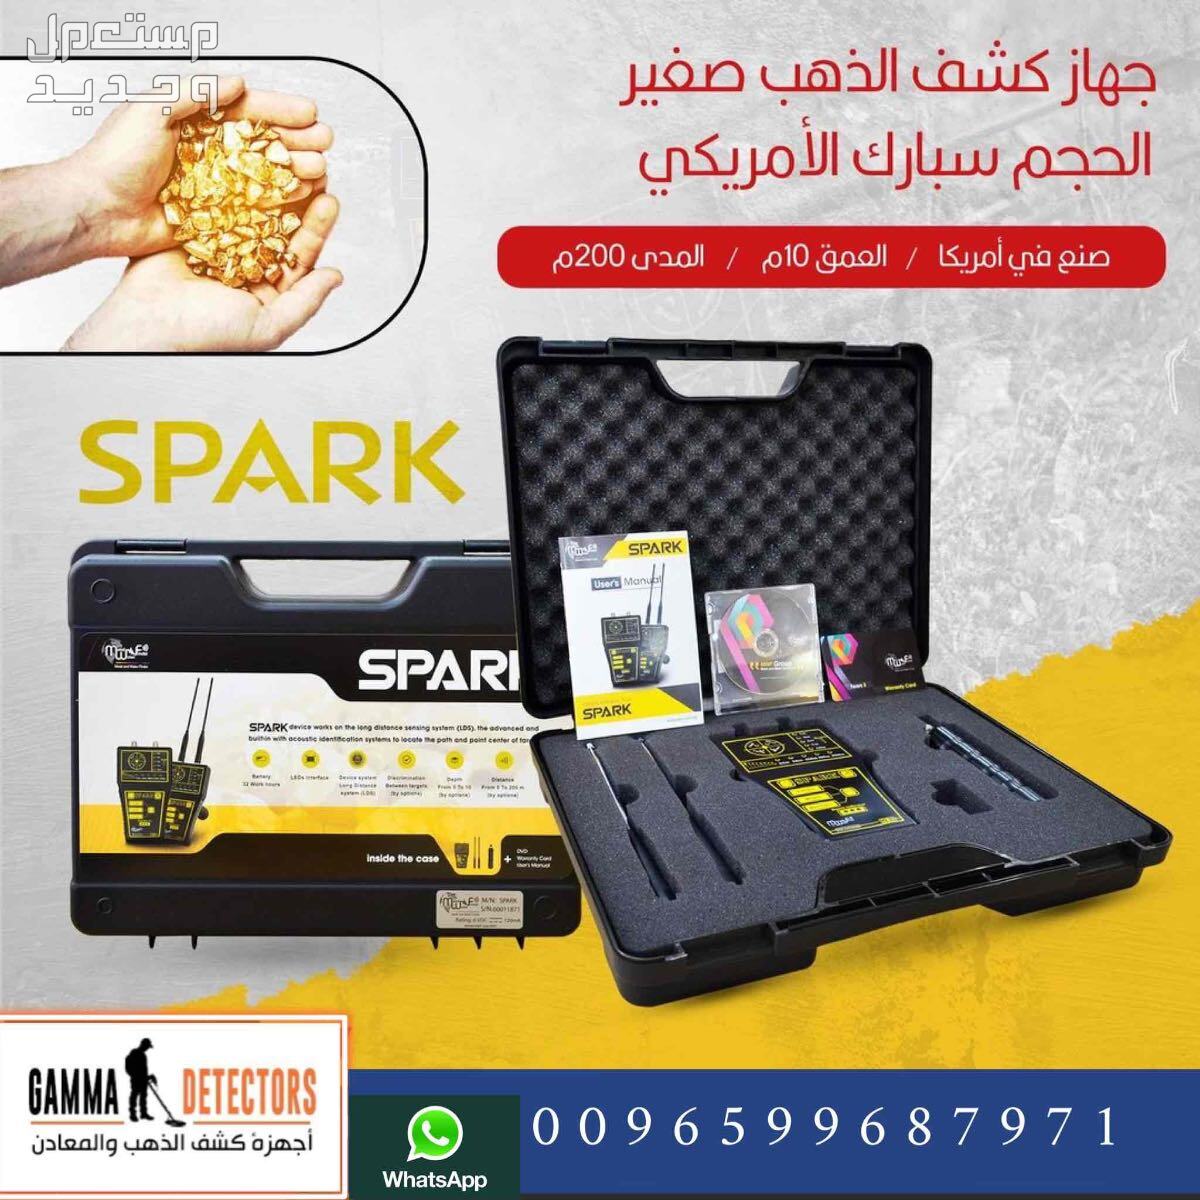 جهاز كشف الذهب سبارك SPARK جهاز كشف الذهب سبارك